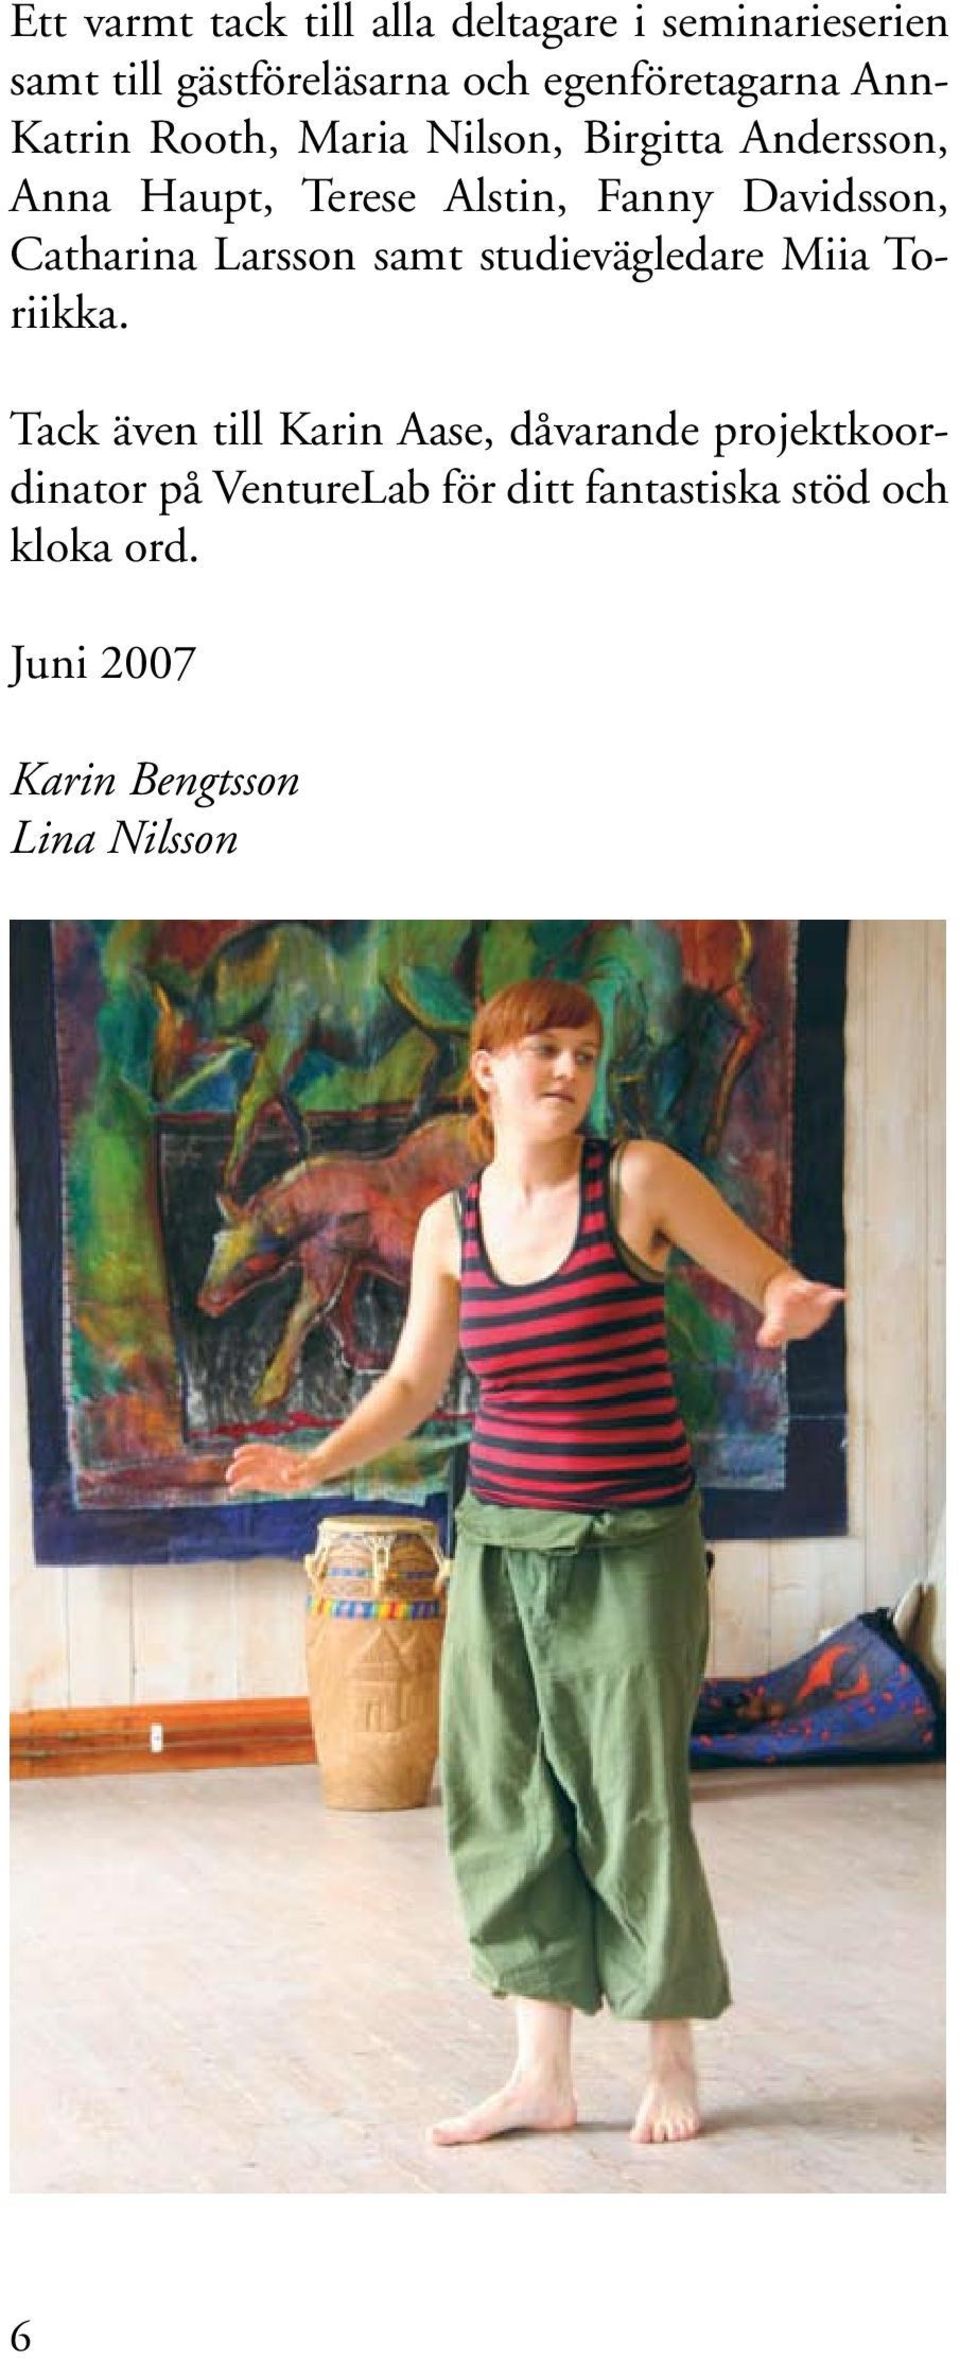 Catharina Larsson samt studievägledare Miia Toriikka.